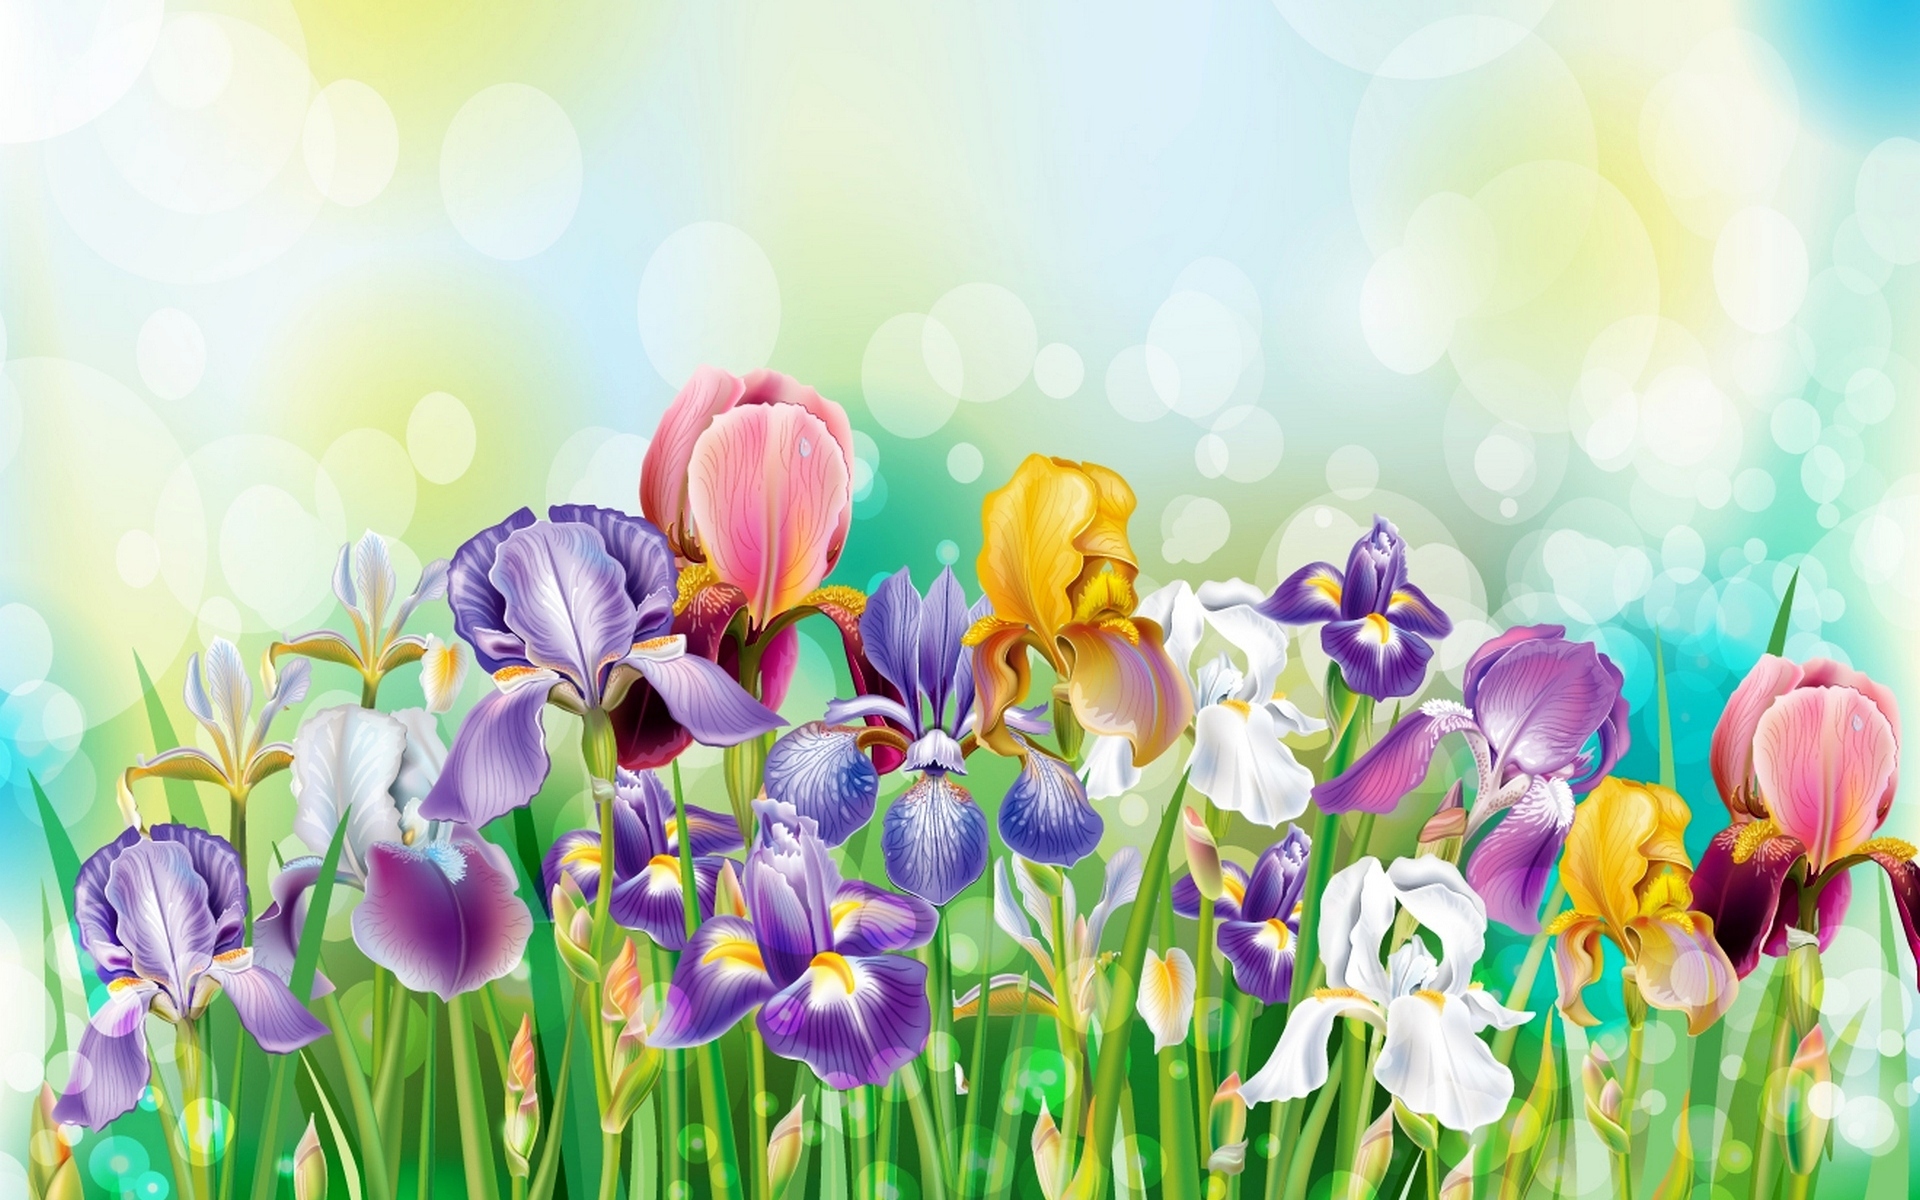 Скачать обои бесплатно Трава, Ирис, Цветок, Цвета, Красочный, Весна, Художественные, Флауэрсы картинка на рабочий стол ПК